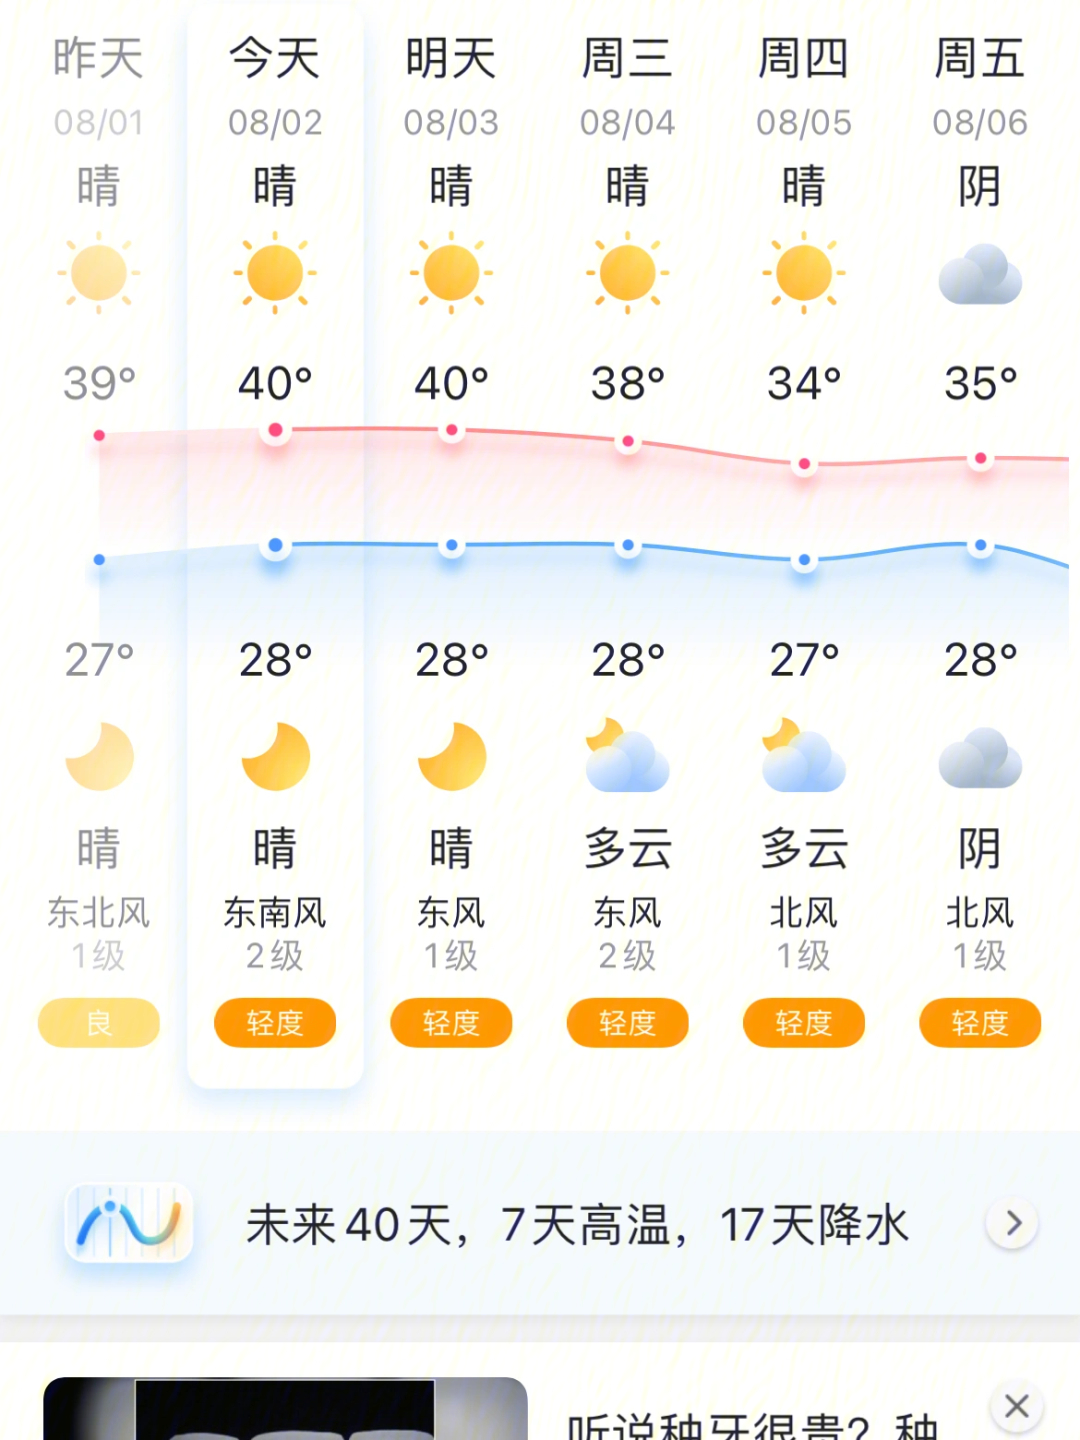 重庆的天气